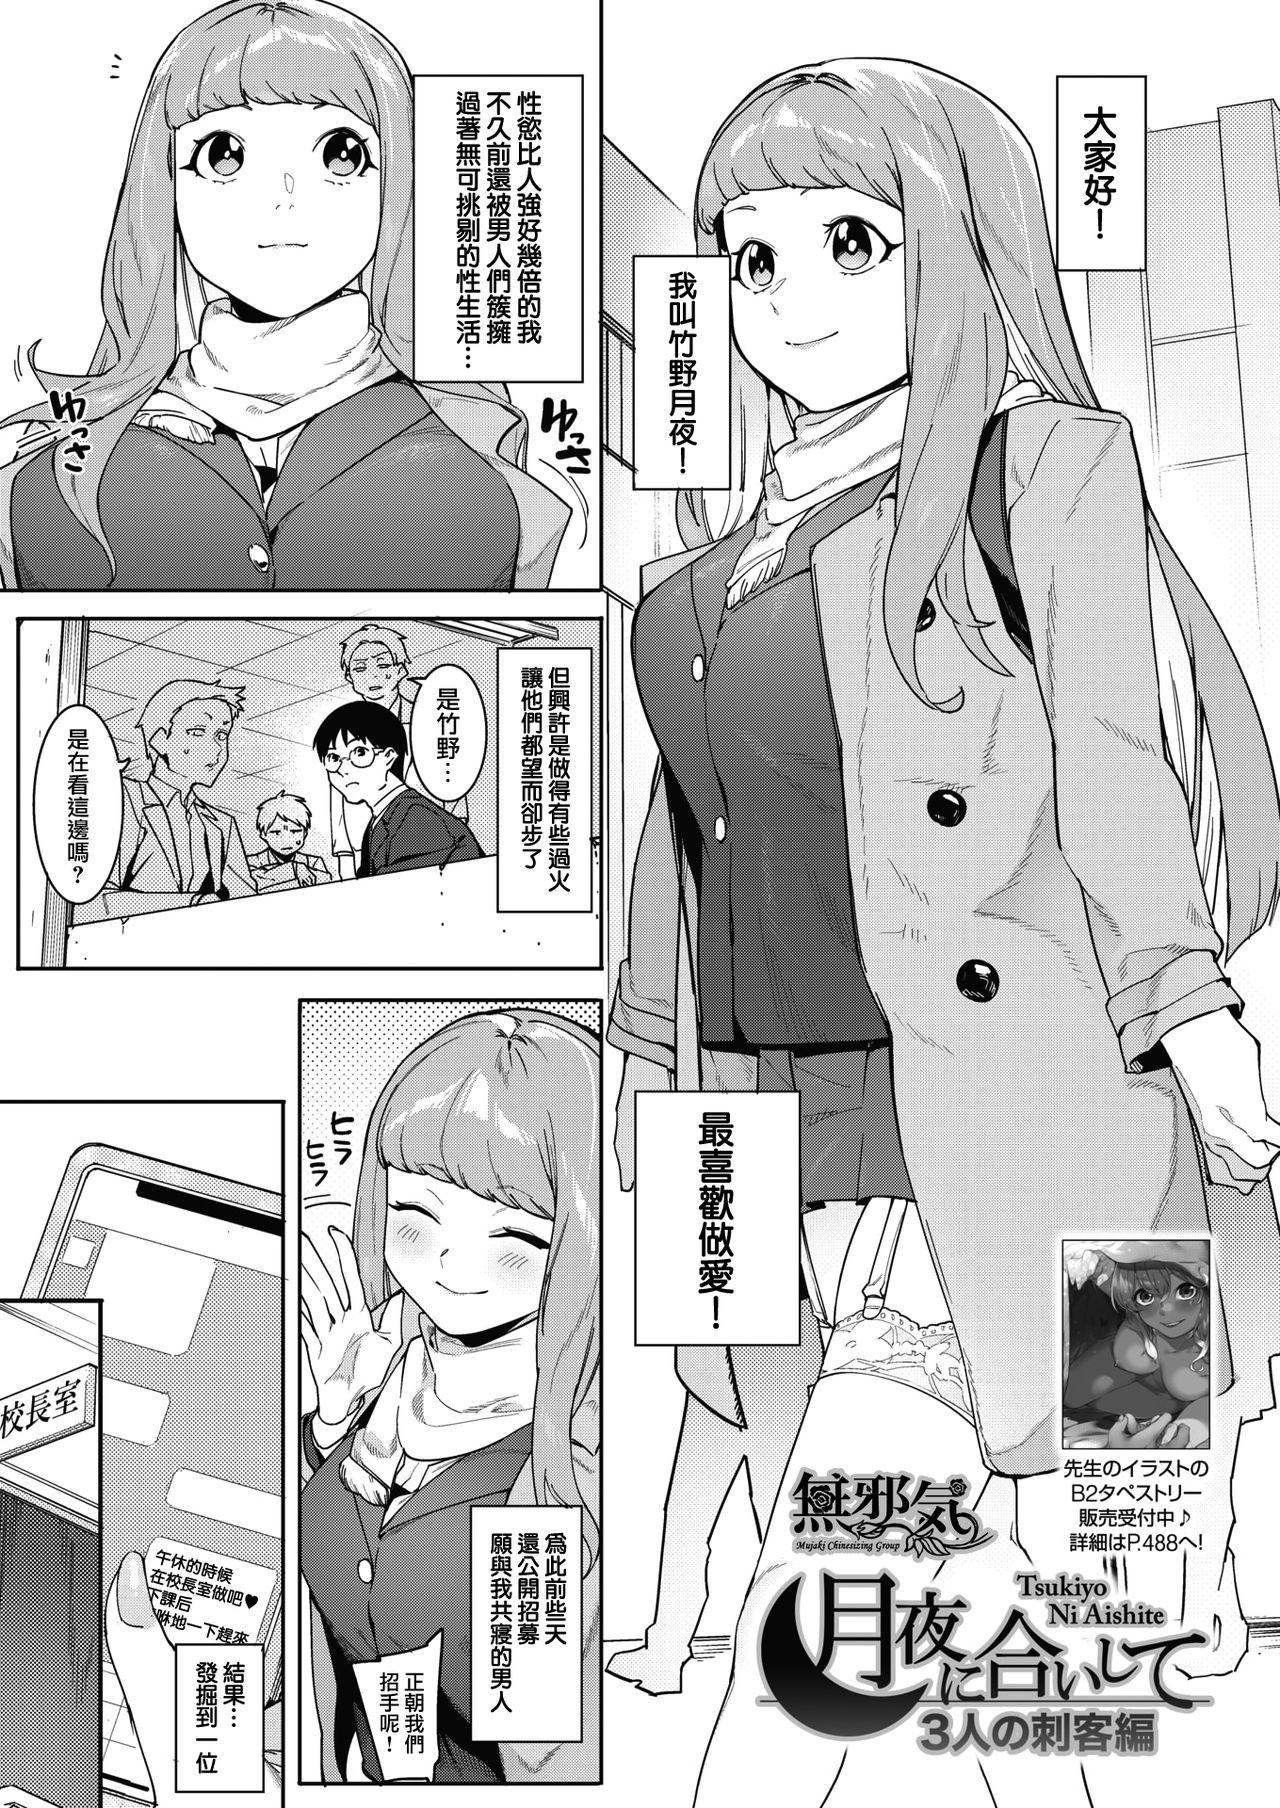 Hot Chicks Fucking Tsukiyo Ni Aishite 3-nin no Shikaku Hen Teen Sex - Page 1